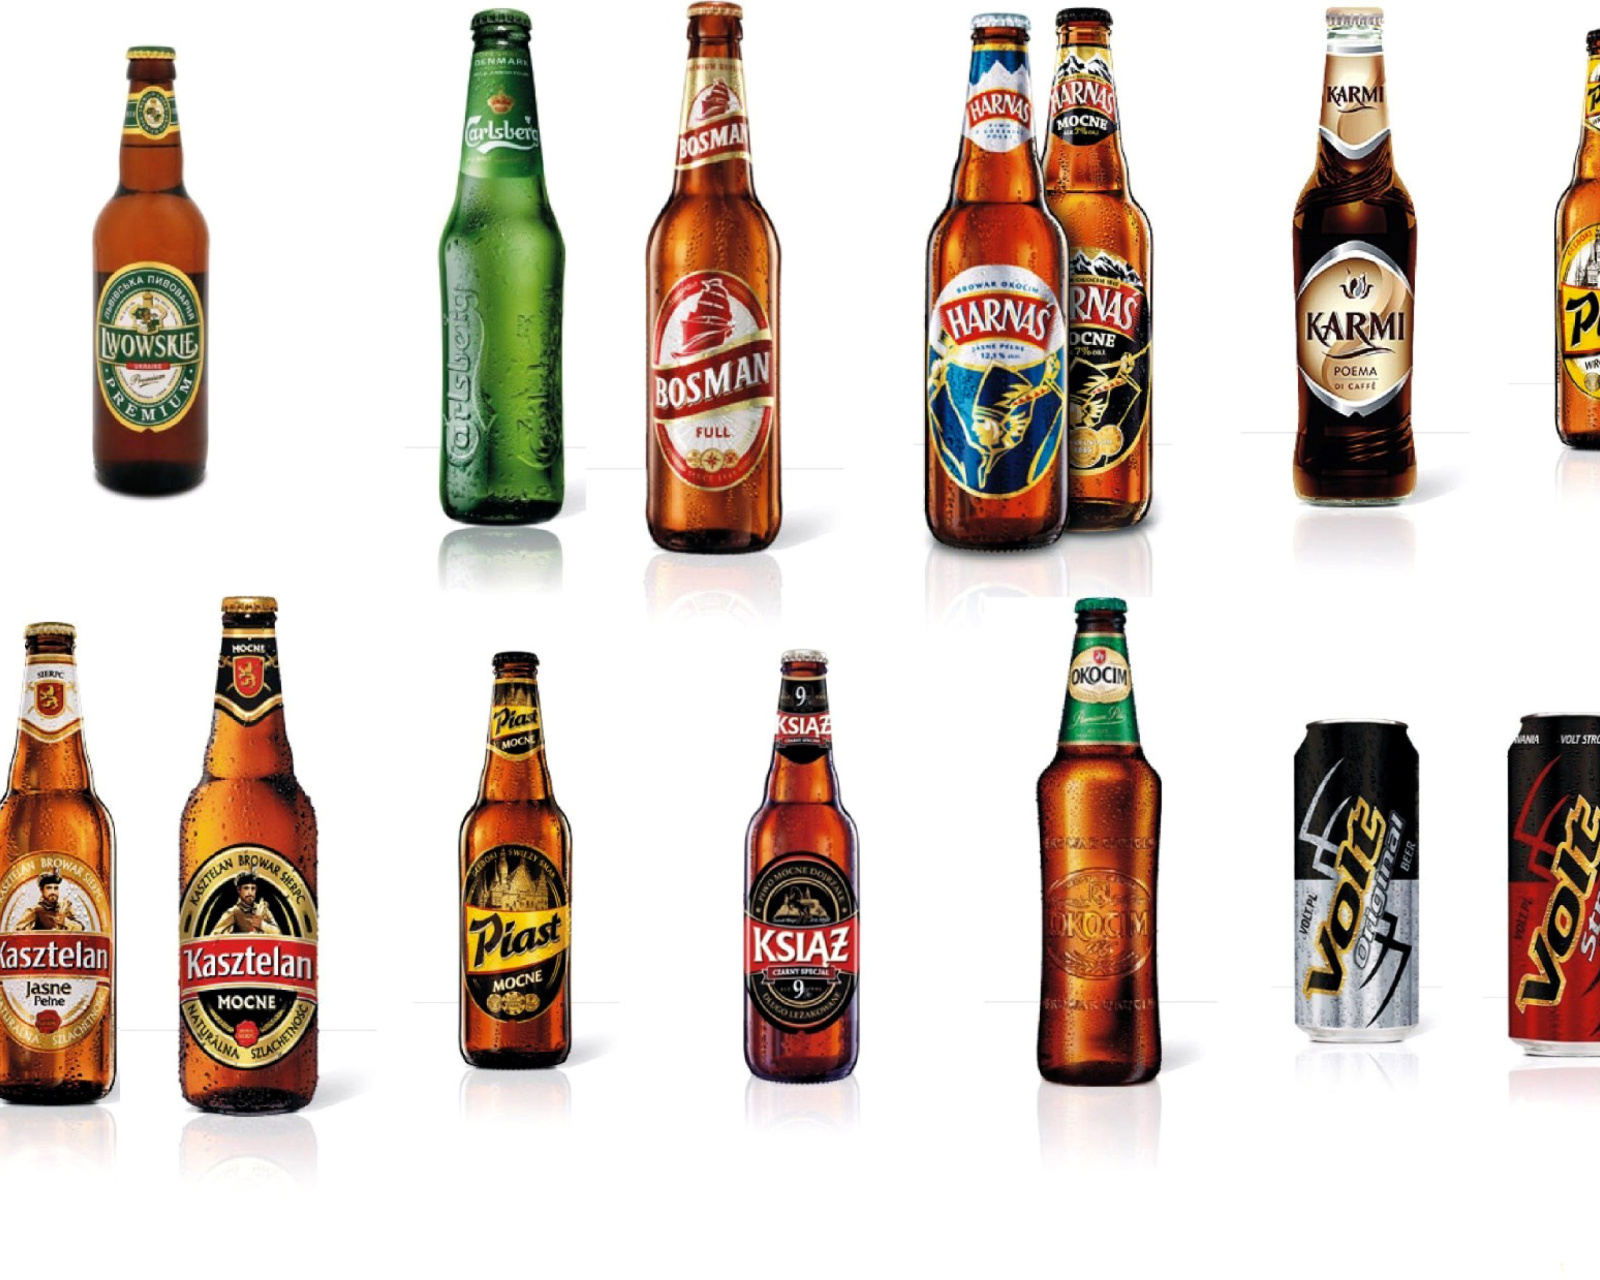 Beer Brands, Bosman, Ksiaz, Harnas, Kasztelan screenshot #1 1600x1280